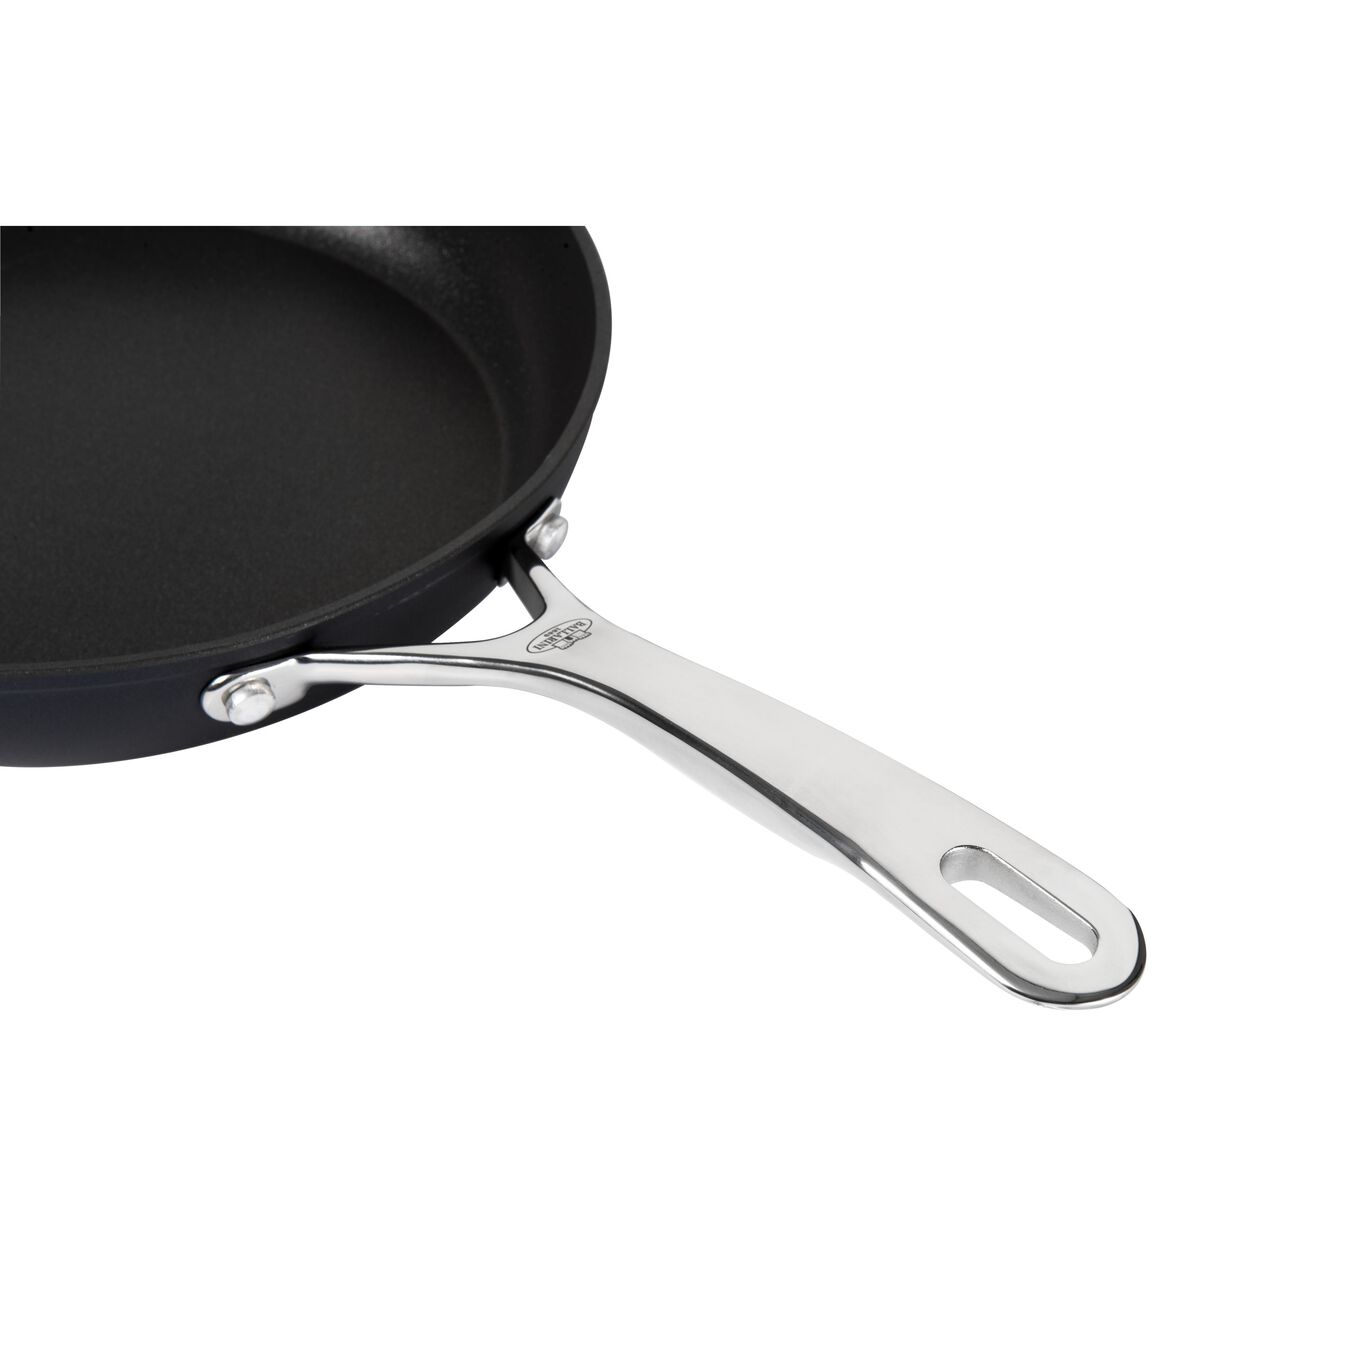 28 cm Aluminium Frying pan black,,large 3